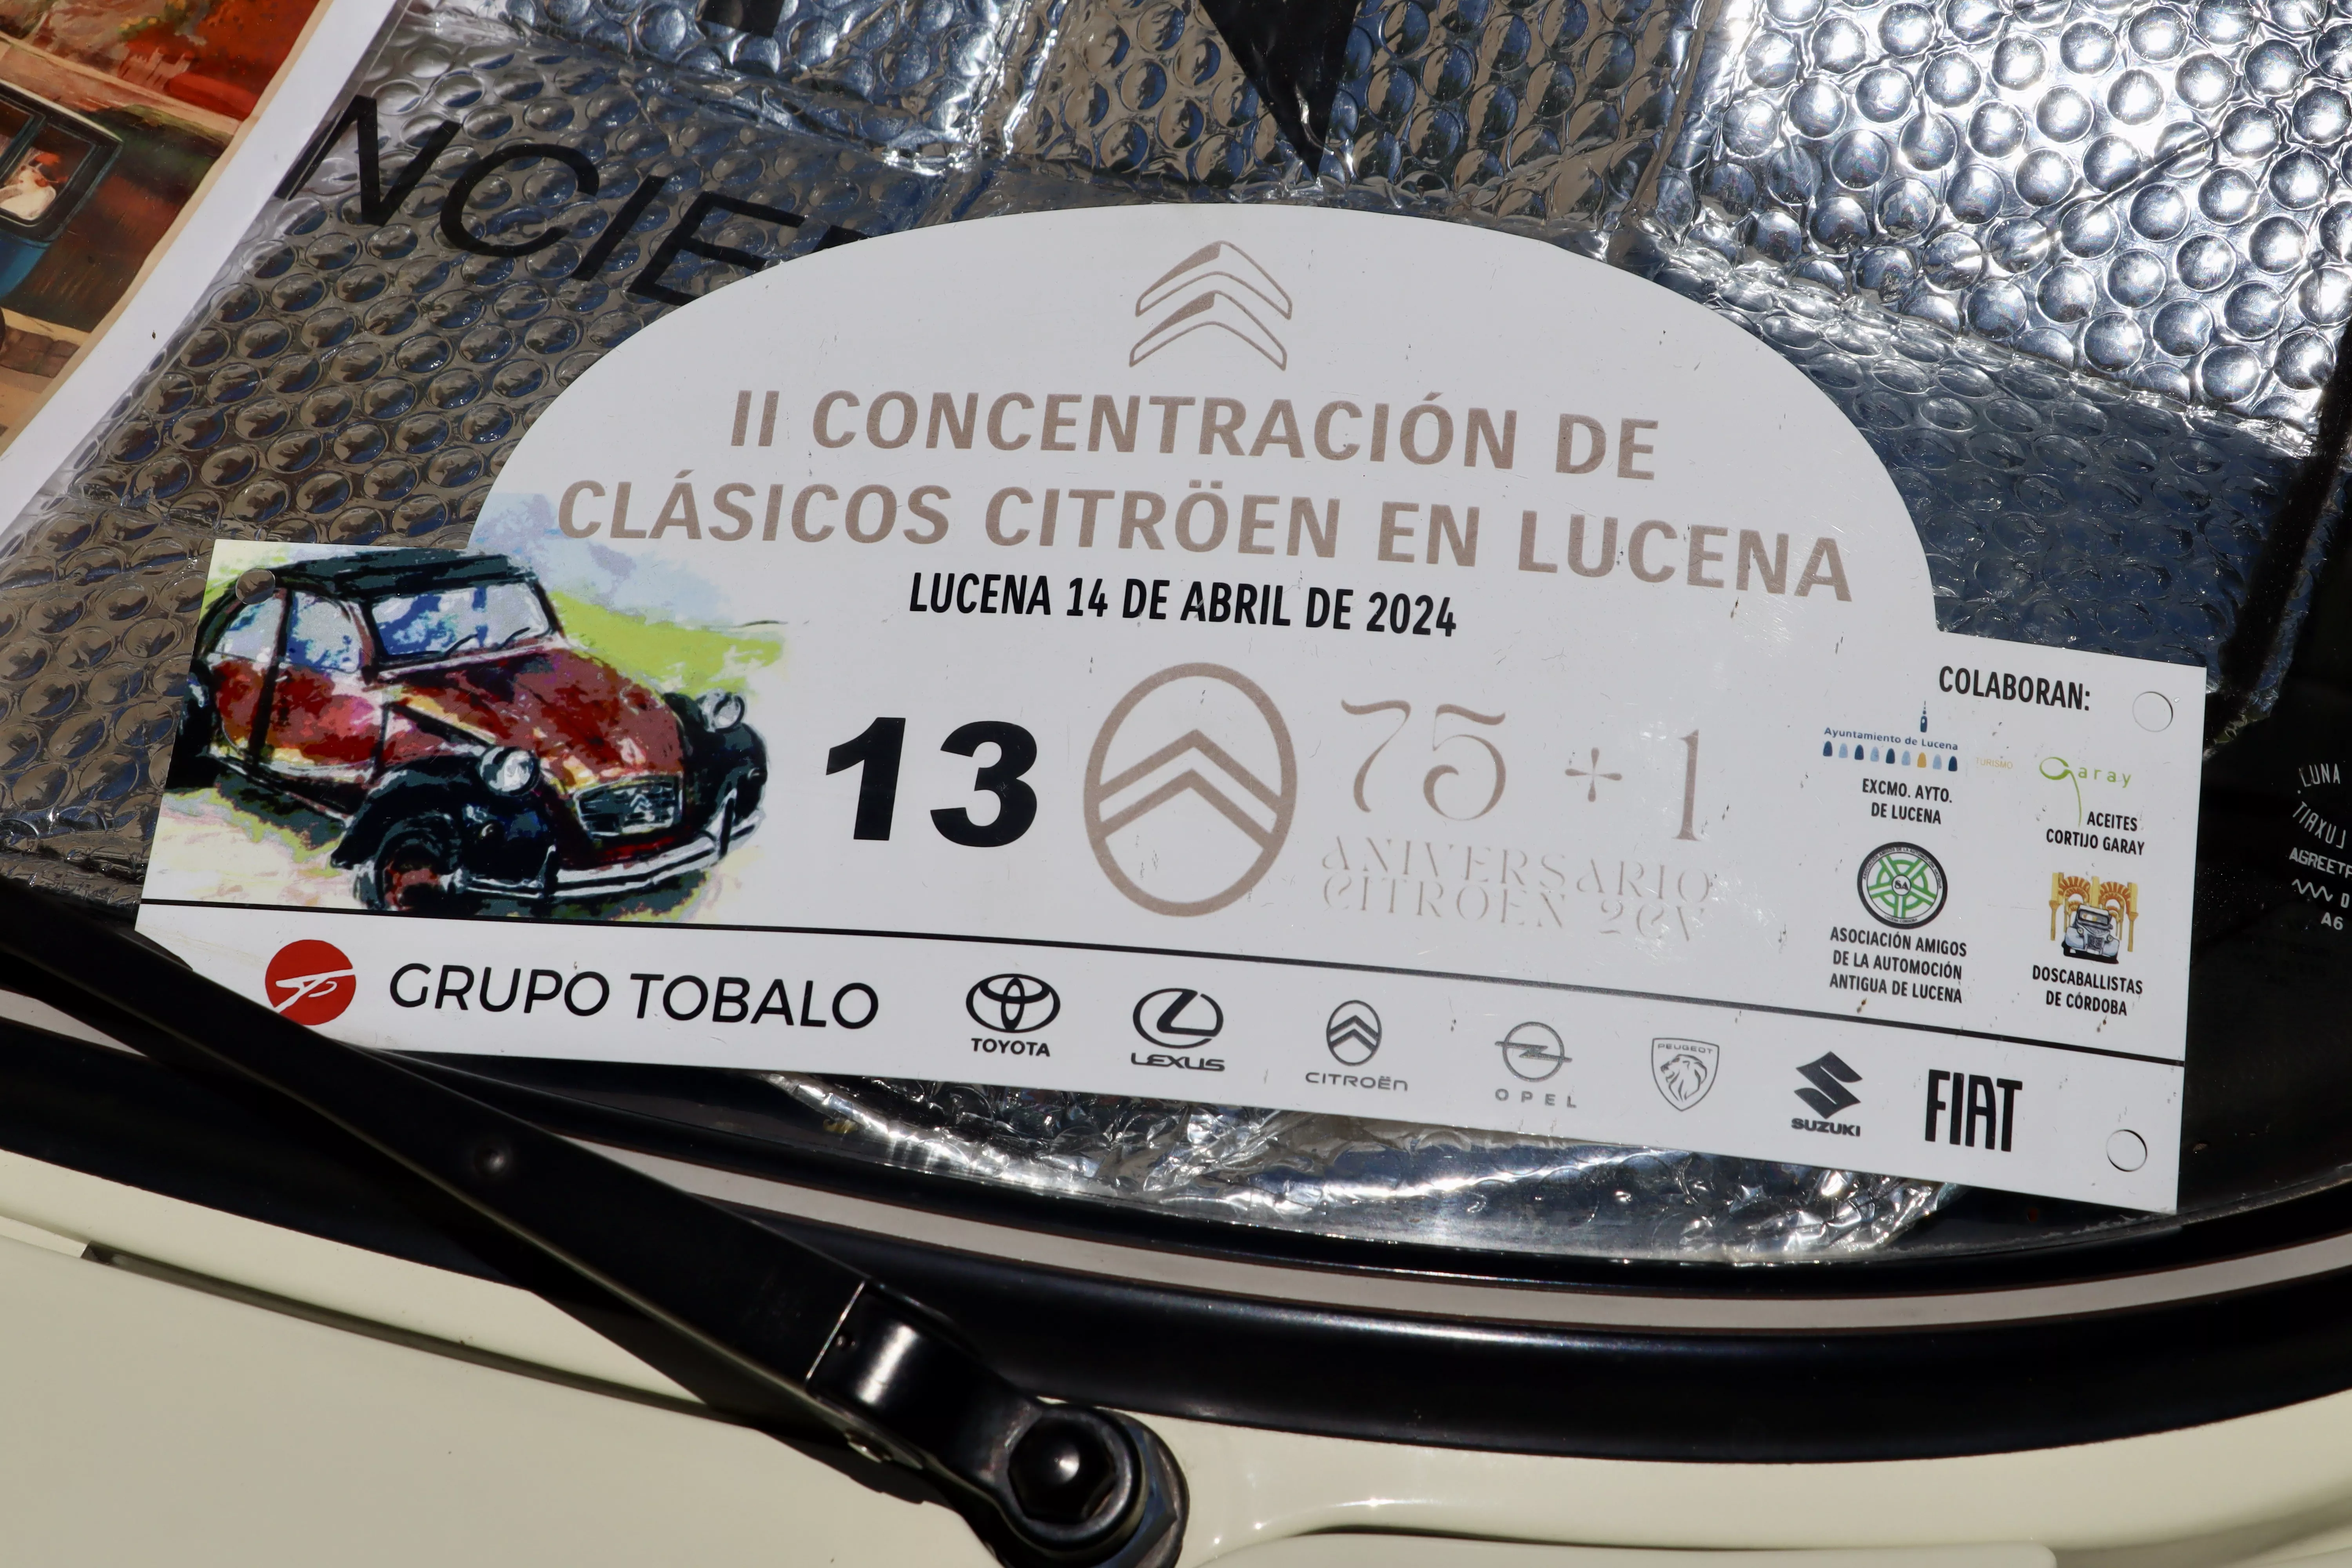 II Concentración de Clásicos Citroën en Lucena